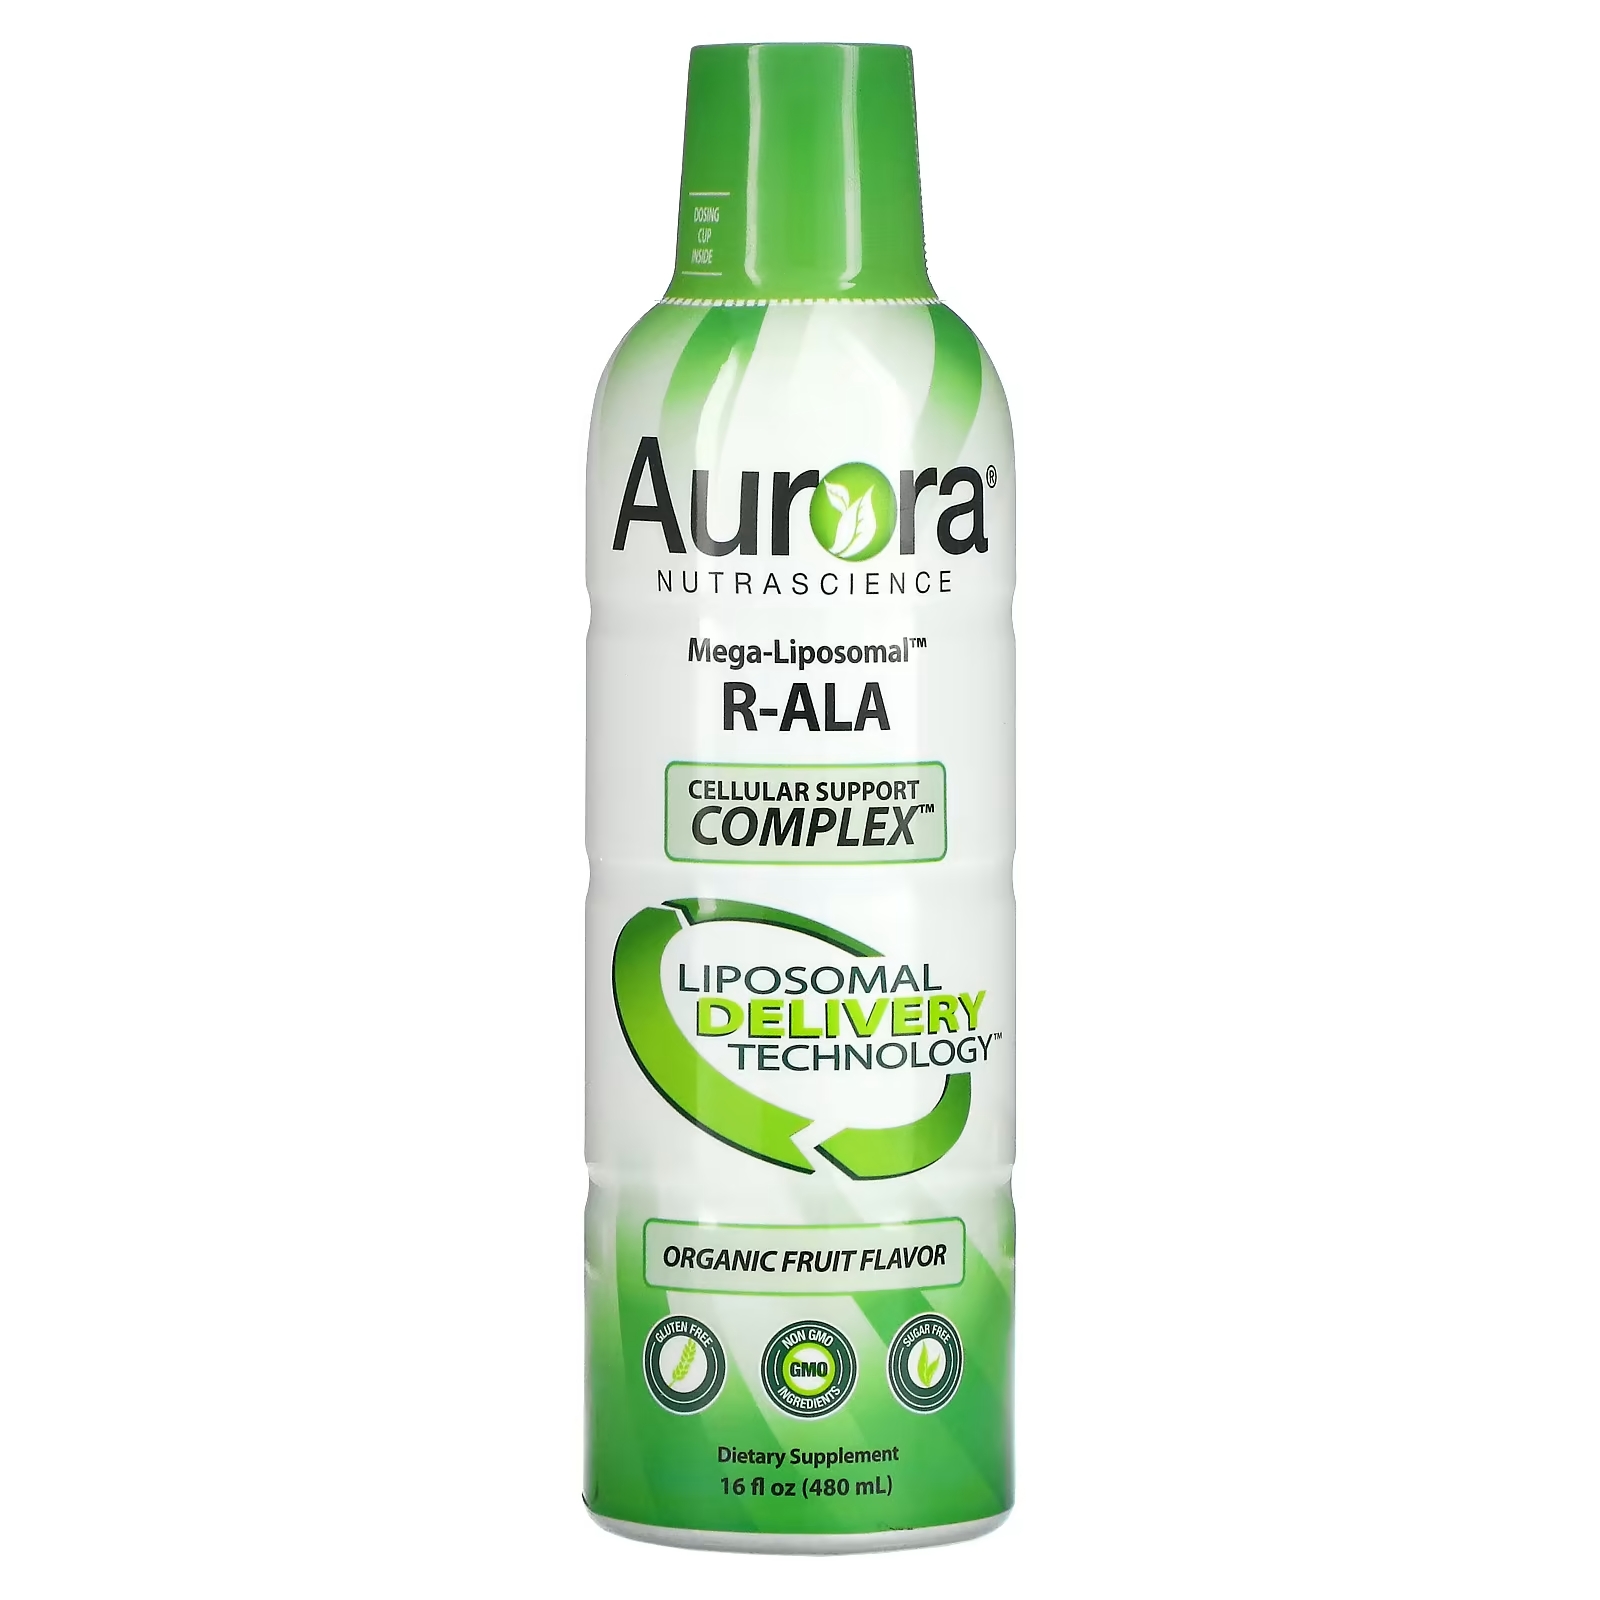 Aurora Nutrascience Mega-Liposomal R-ALA R-альфа липоевая кислота со вкусом органических фруктов, 480 мл